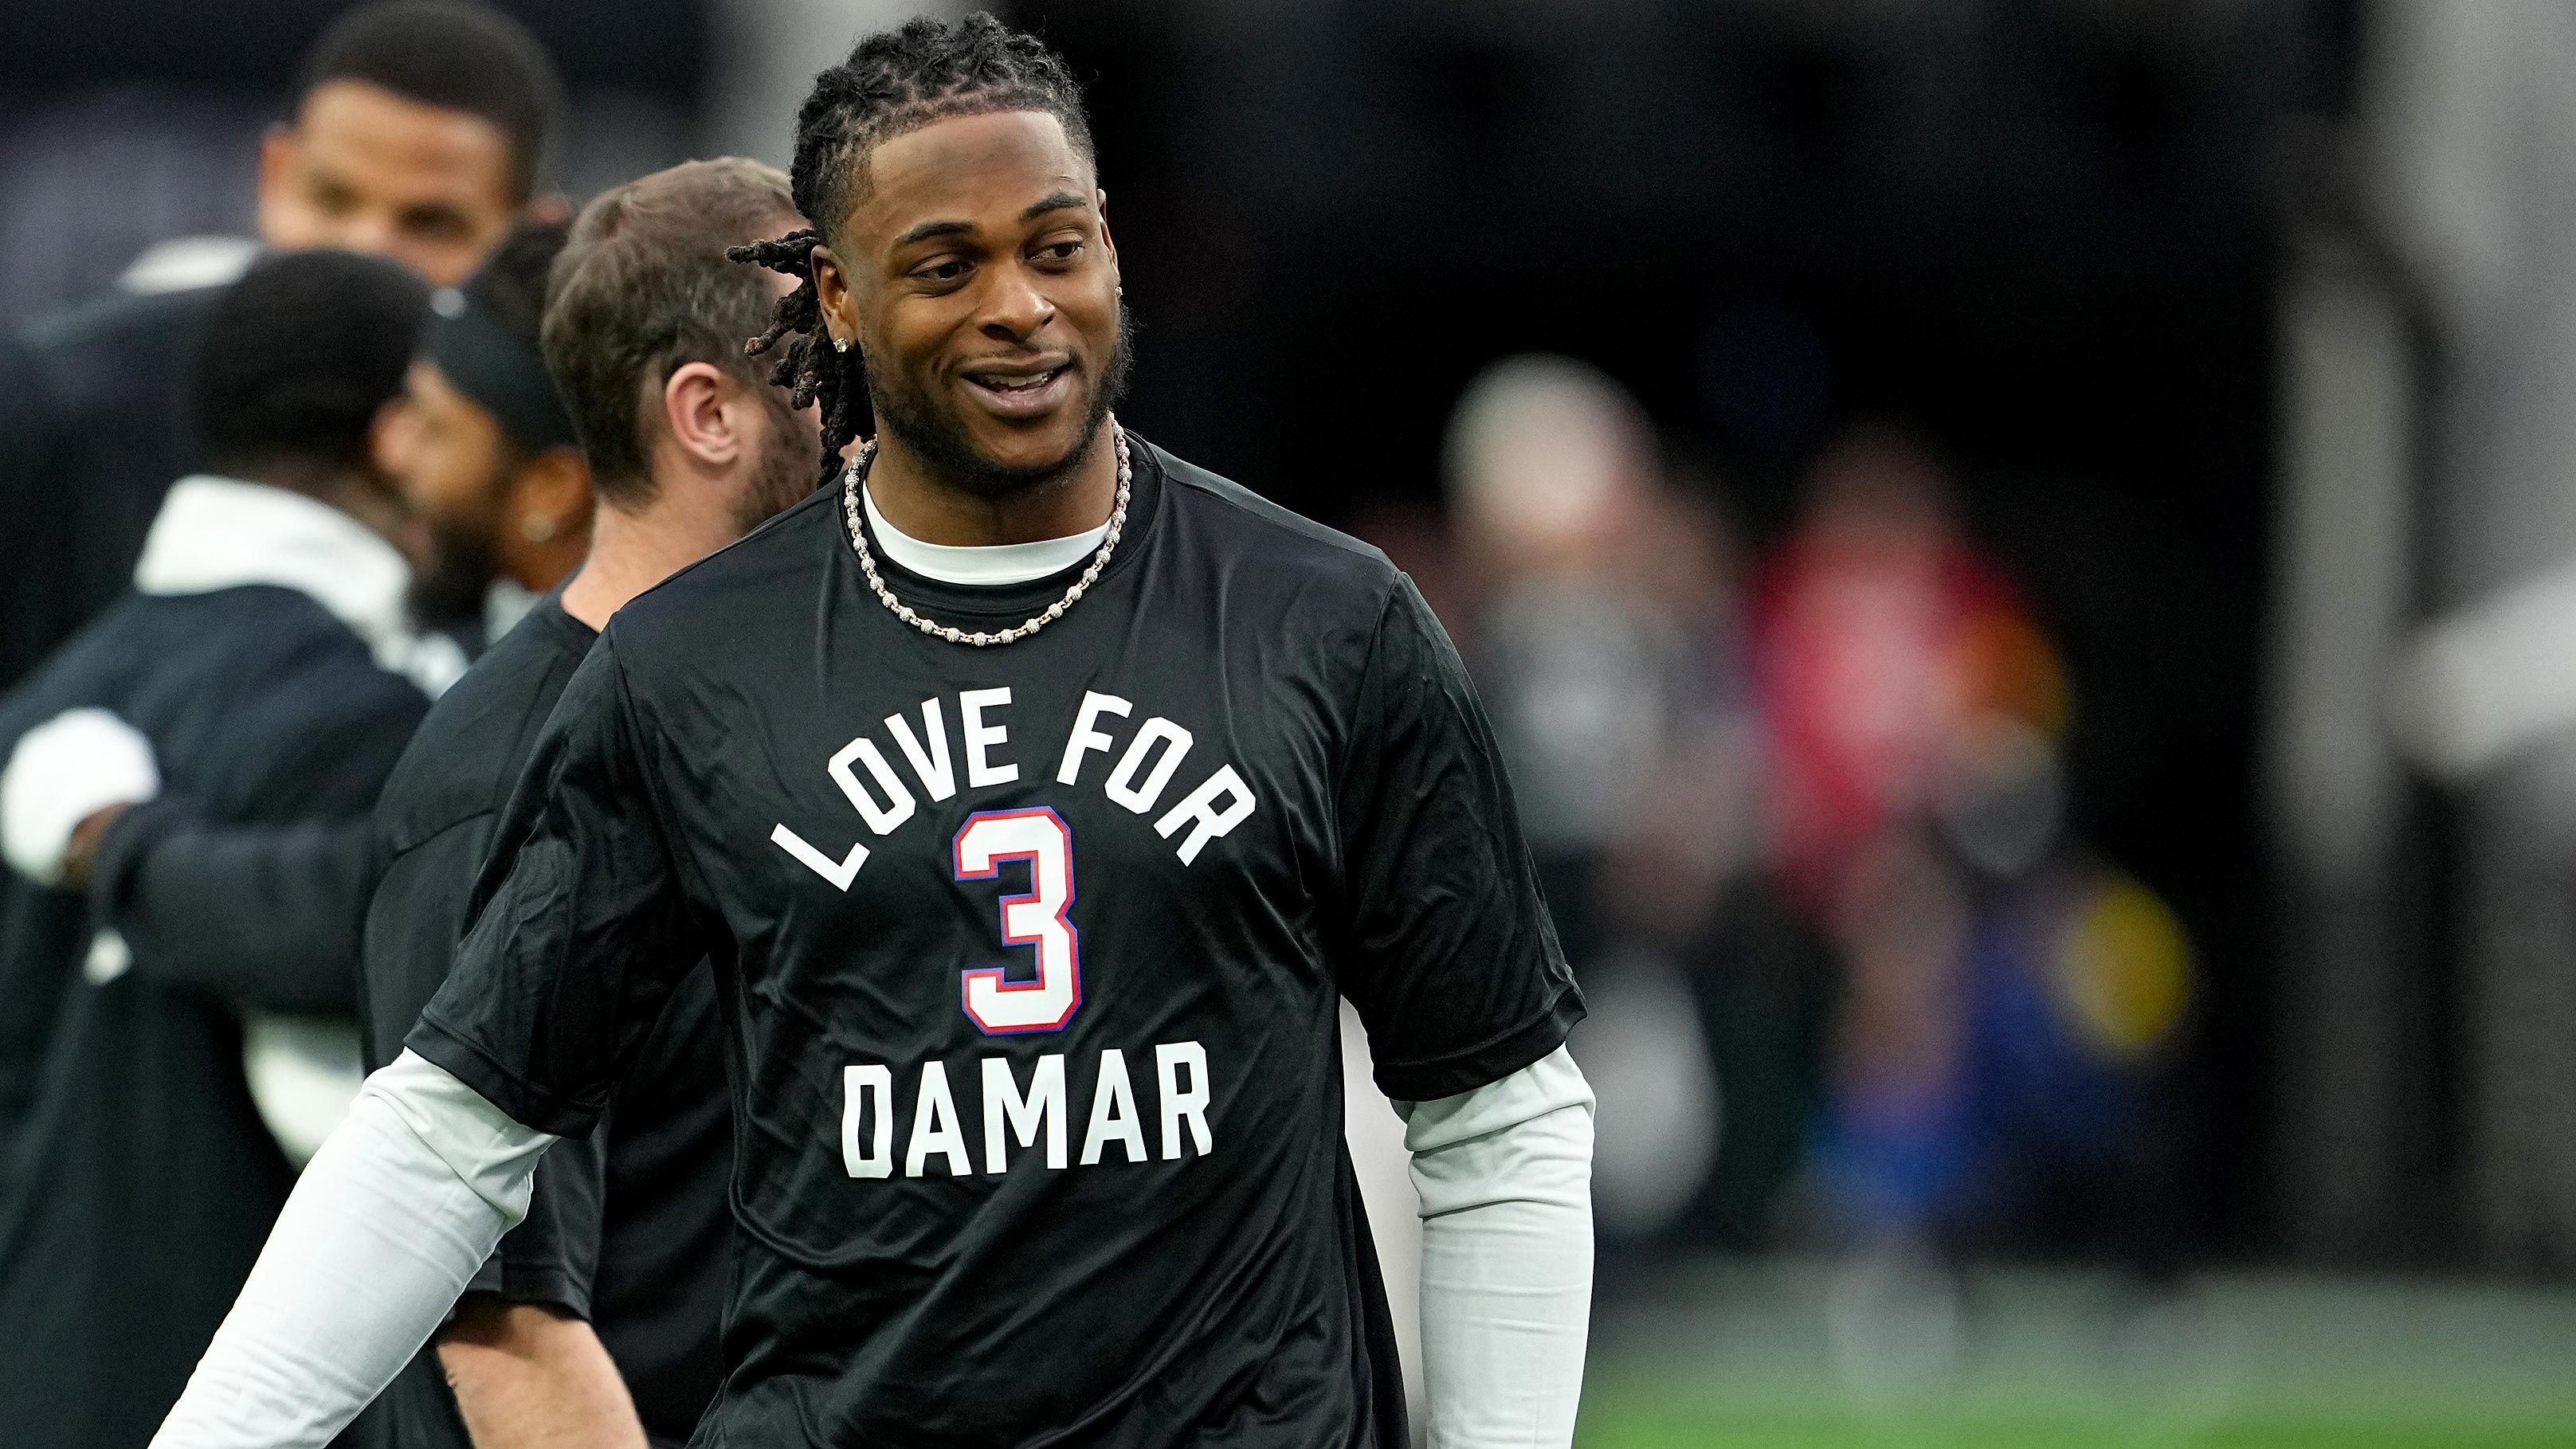 
                <strong>Davante Adams</strong><br>
                Auch die Spieler der Las Vegas Raiders trugen das Shirt, wie hier Star-Receiver Davante Adams. Die Highlights vom Spiel der Raiders gegen die Chiefs findet ihr hier.
              